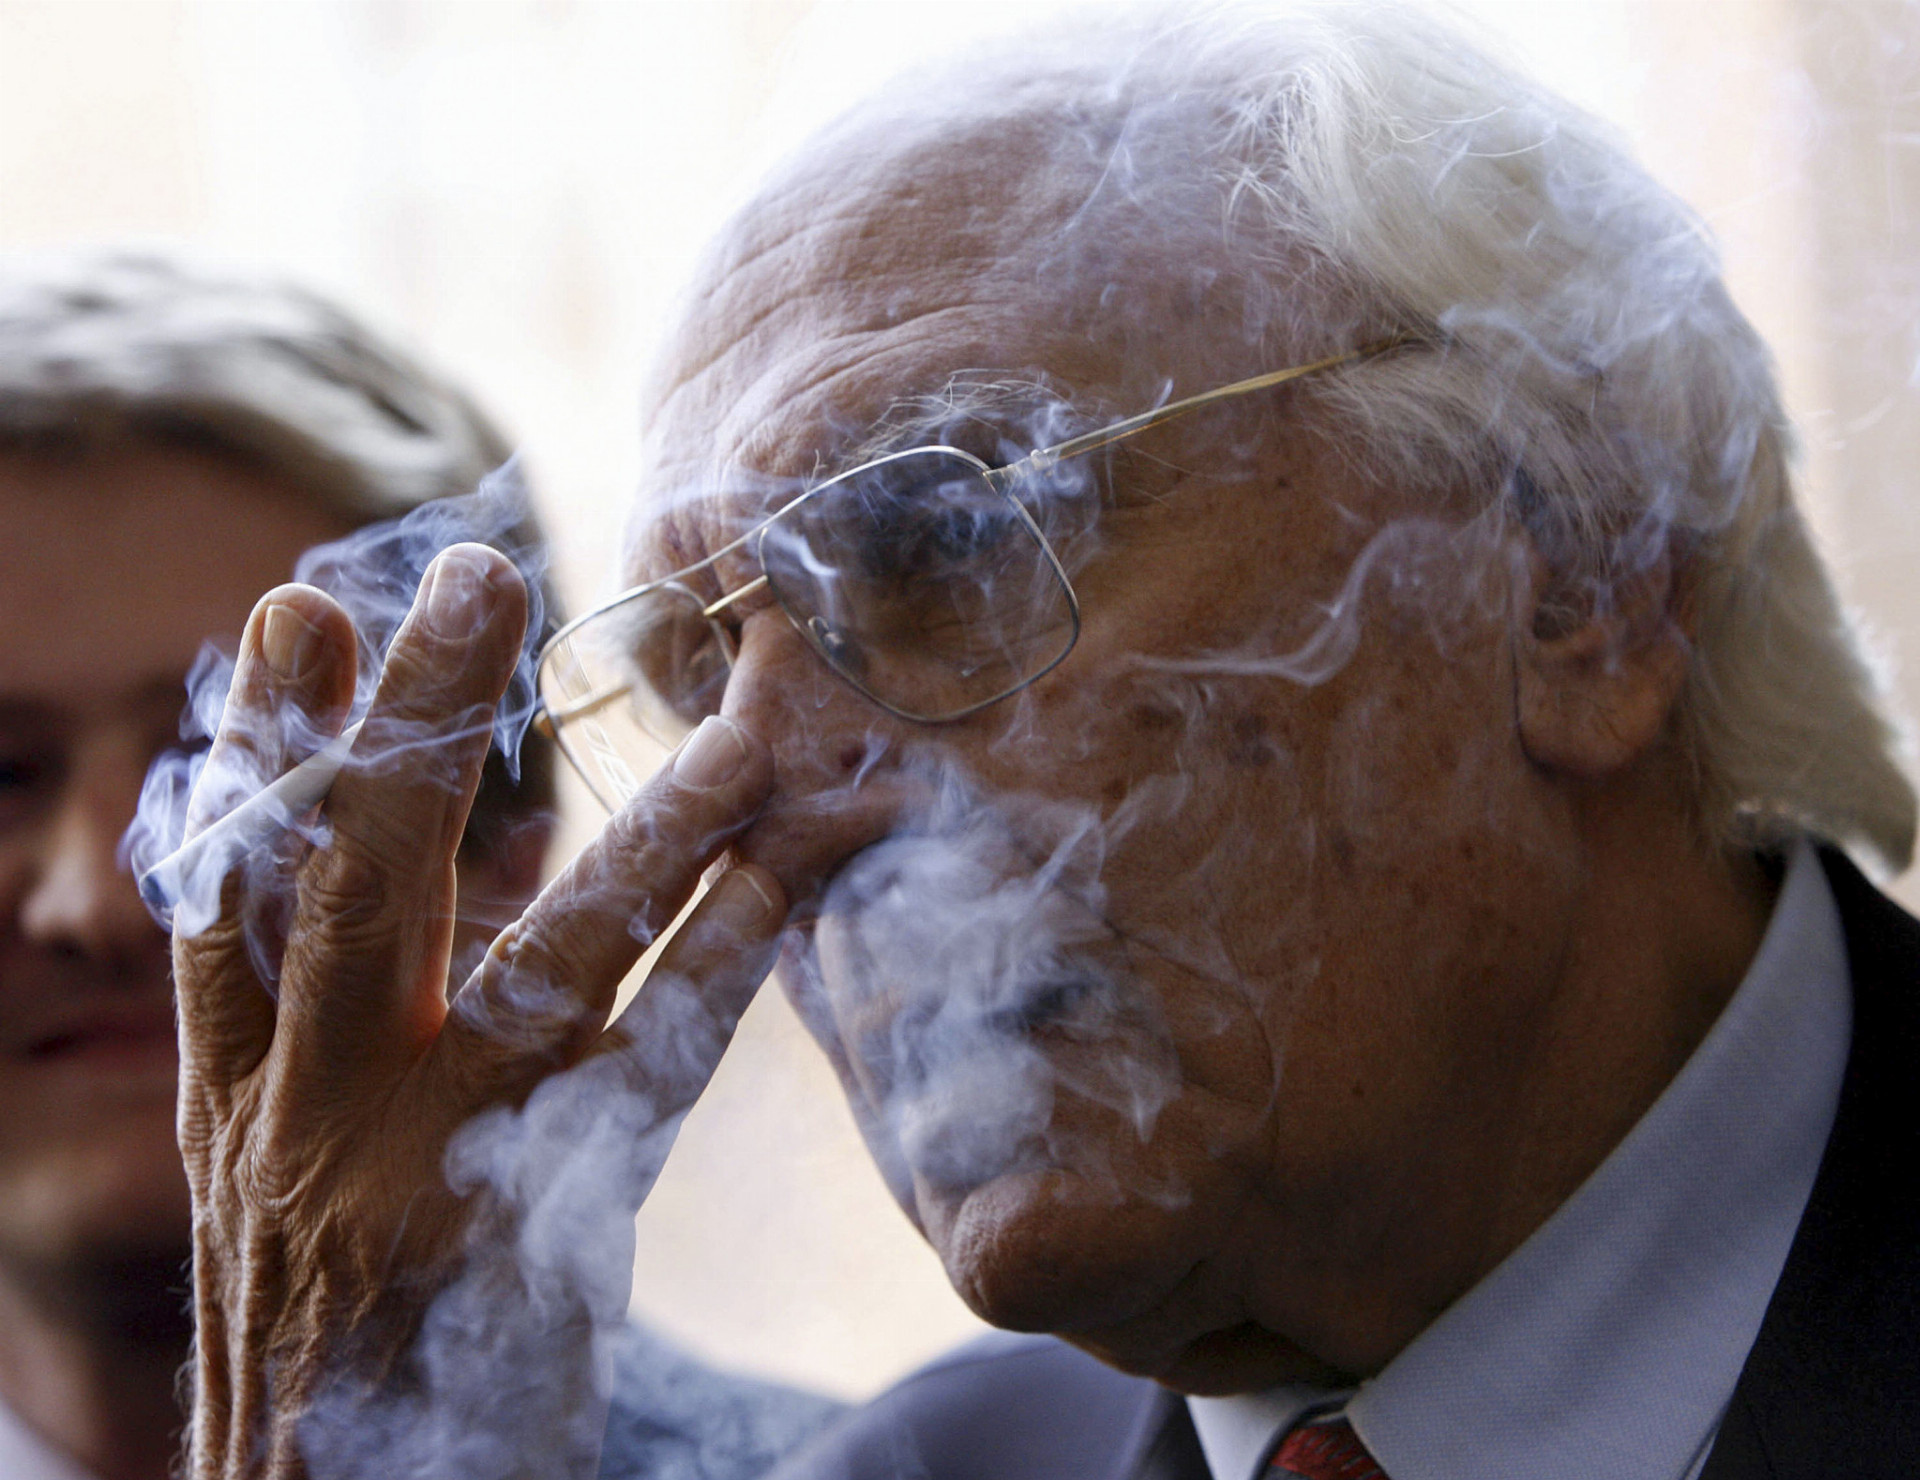 Od budúceho roka si fajčiari priplatia za cigarety a tabak. Ministerstvo zdvihne časť dane na cigarety na 61,8 eura na tisíc kusov. Pritom od roku 2019 porastie táto daň o ďalšie dve eurá. Pri tabaku sa daň vyšplhá o asi tri eurá na kilo od budúceho roka. Podľa Ľubomíra Tuschera zo Slovenského združenia pre značkové výrobky sa tak zvýši predvídateľnosť podnikateľského prostredia. „Návrh prináša kľúčový prvok, ktorým je zavedenie daňového kalendára na najbližšie štyri roky,“ doplnil. 